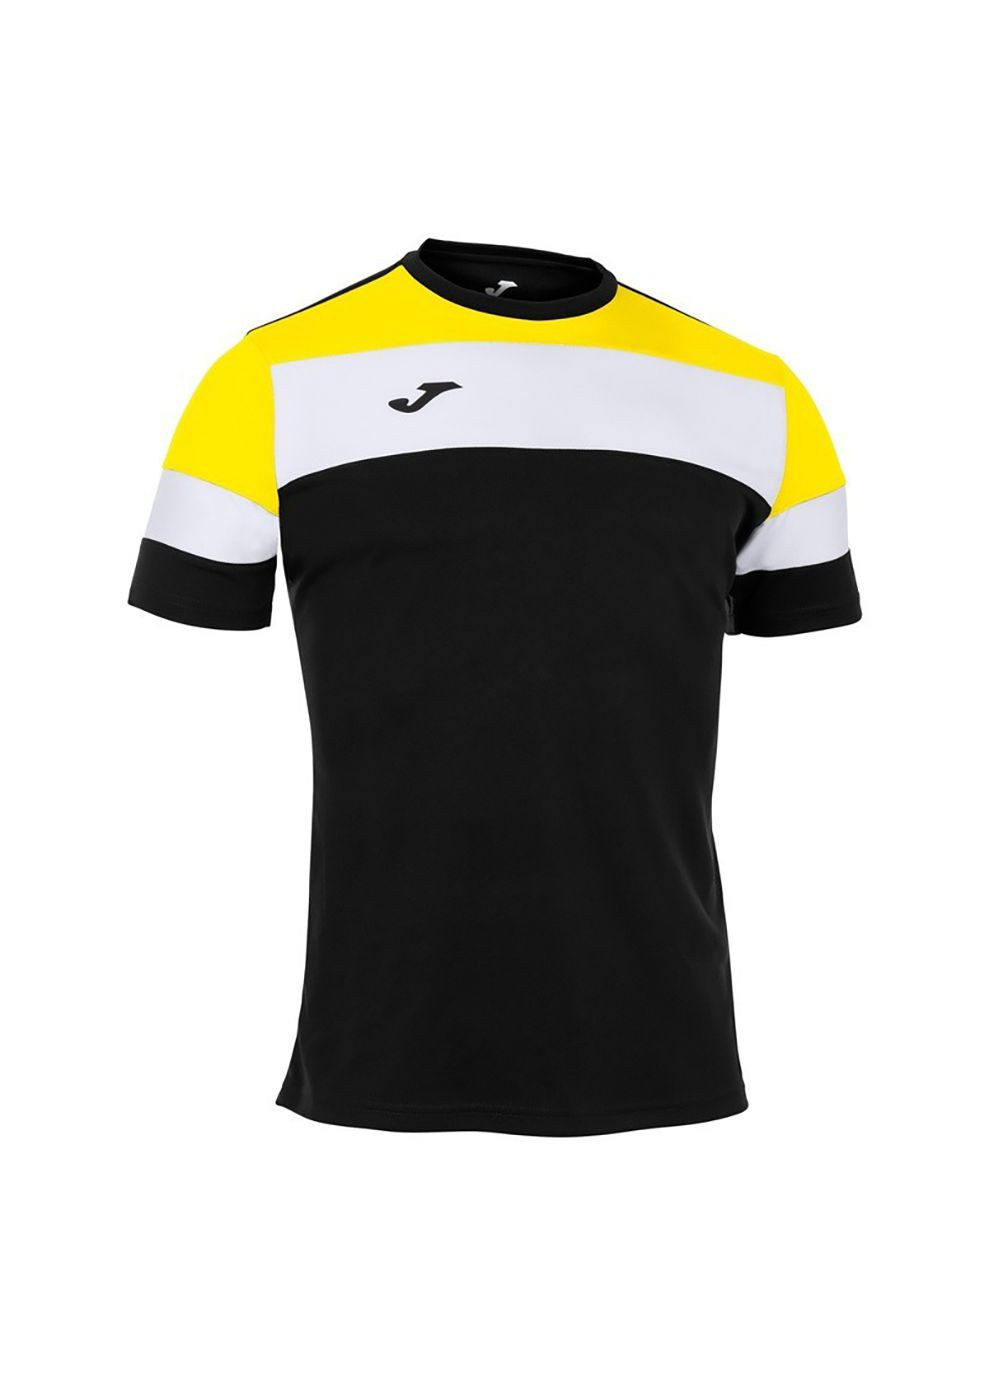 Комбінована футболка crew iv t-shirt black-yellow s/s чорний,жовтий 101534.109 Joma